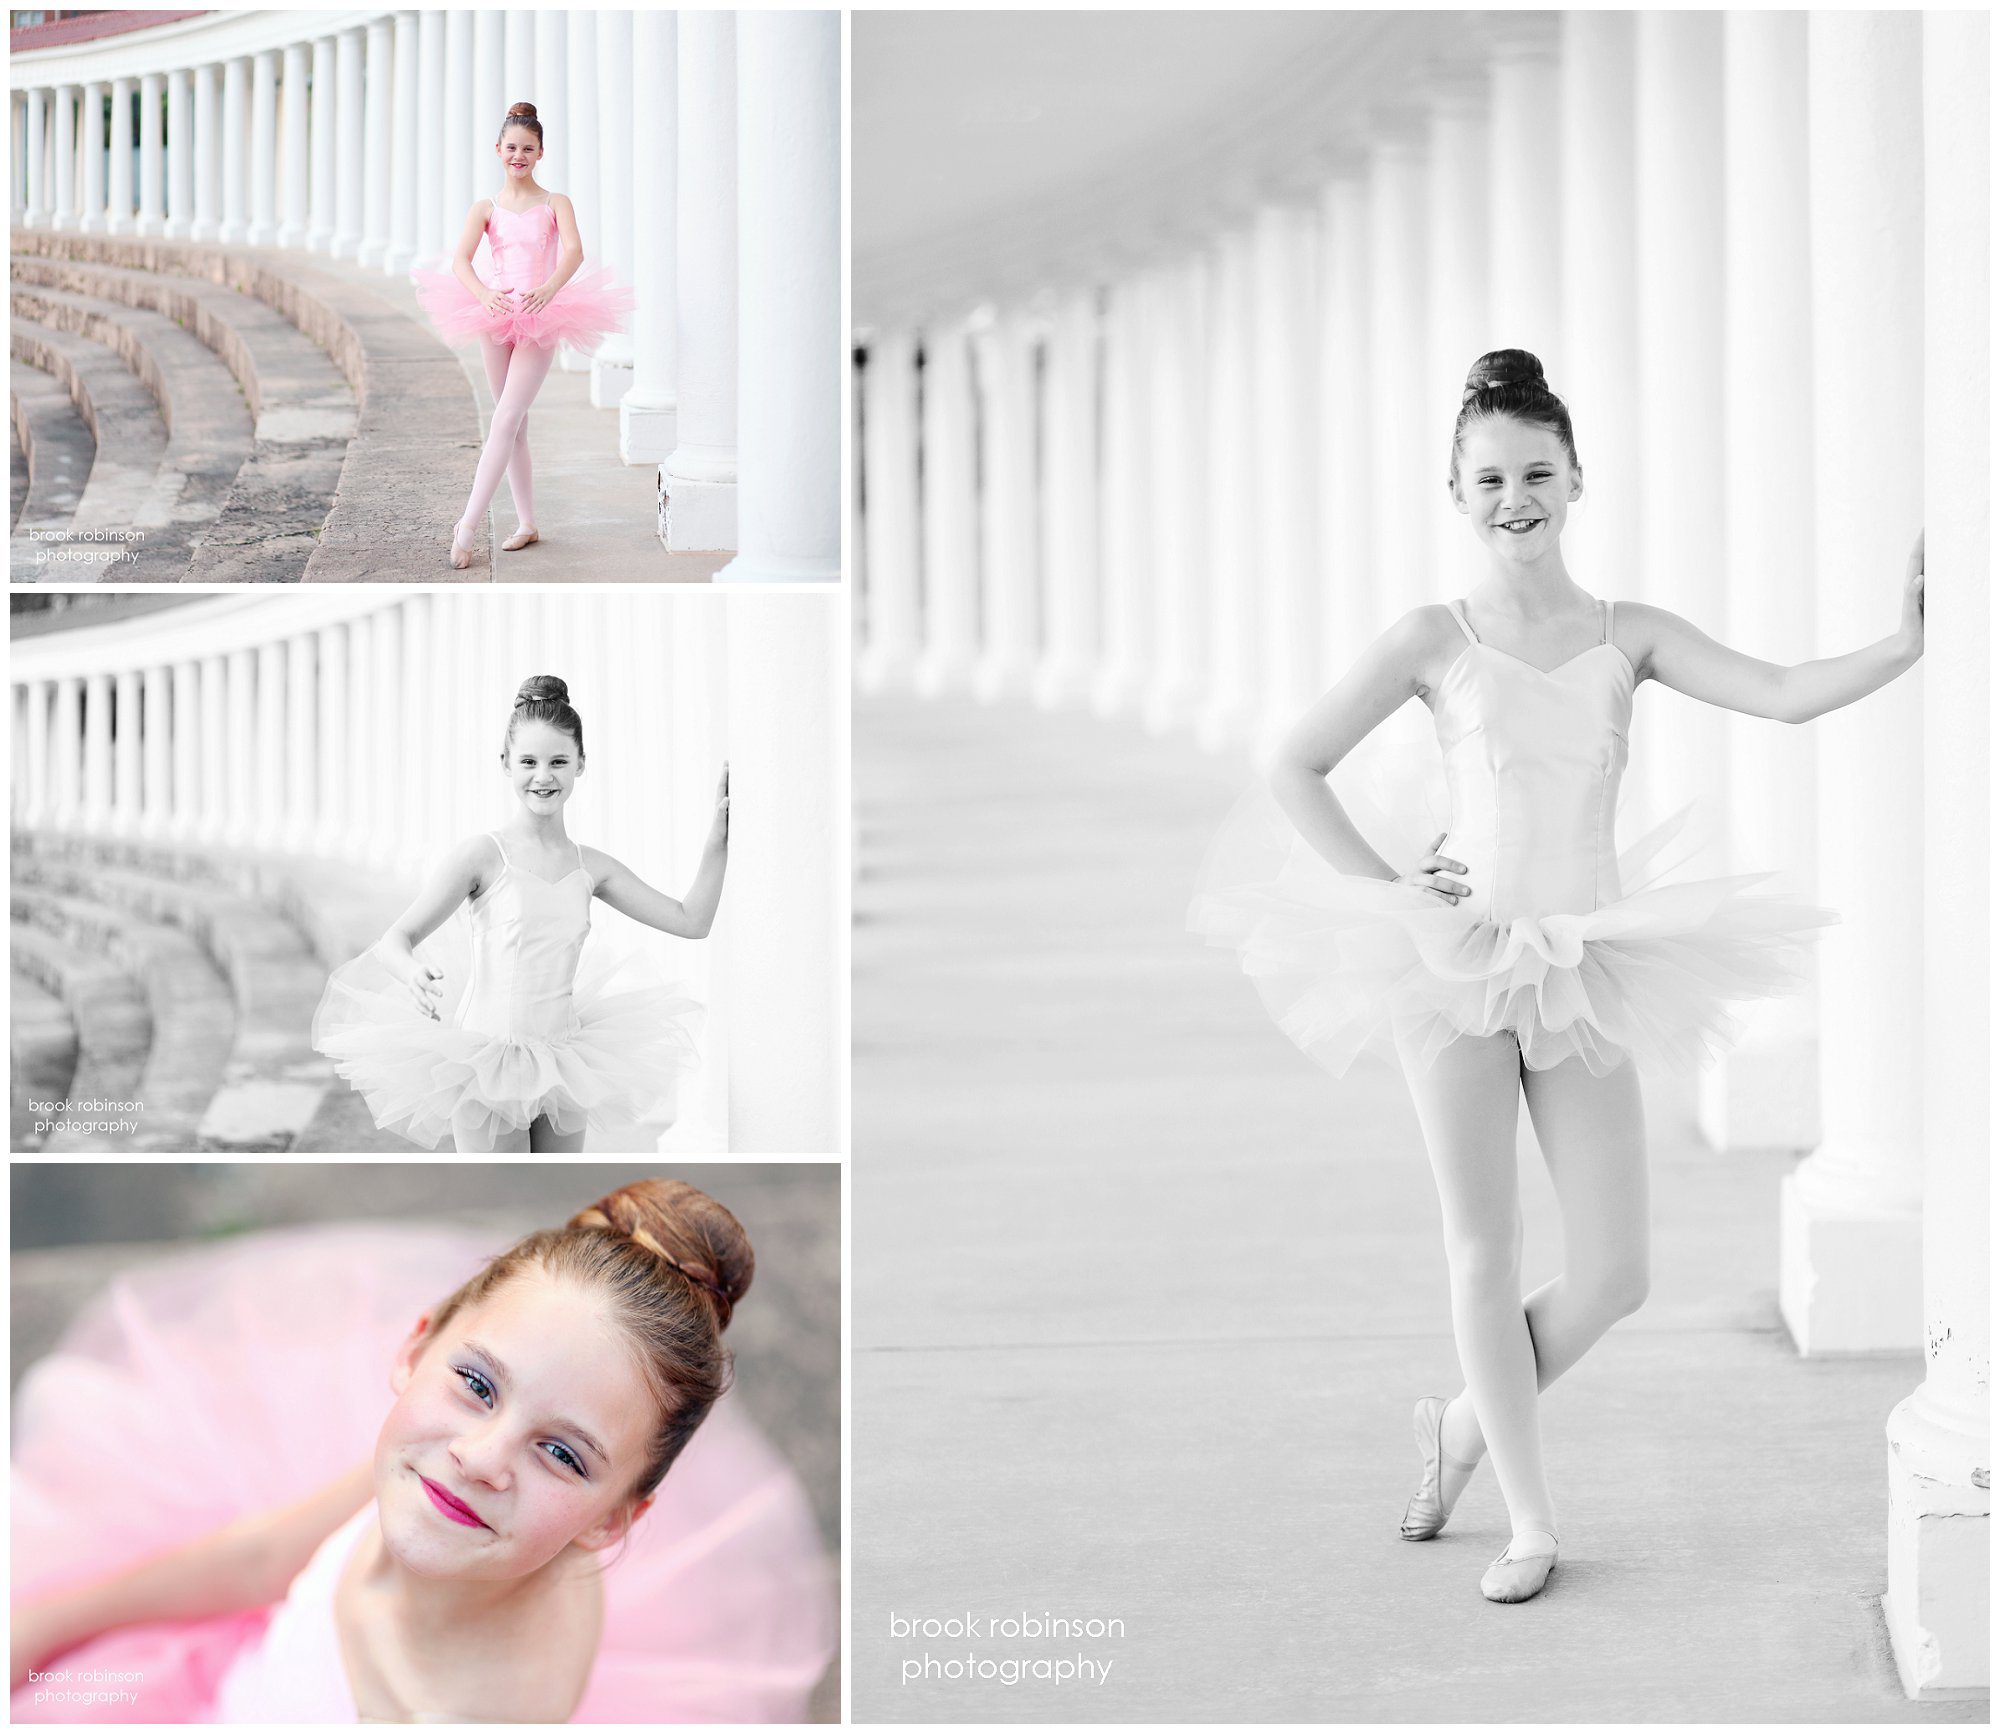 fluvanna dancer dance ballet ballerine recital costume portrait photographer uva ground colonades charlottesville richmond albemarle county virginia